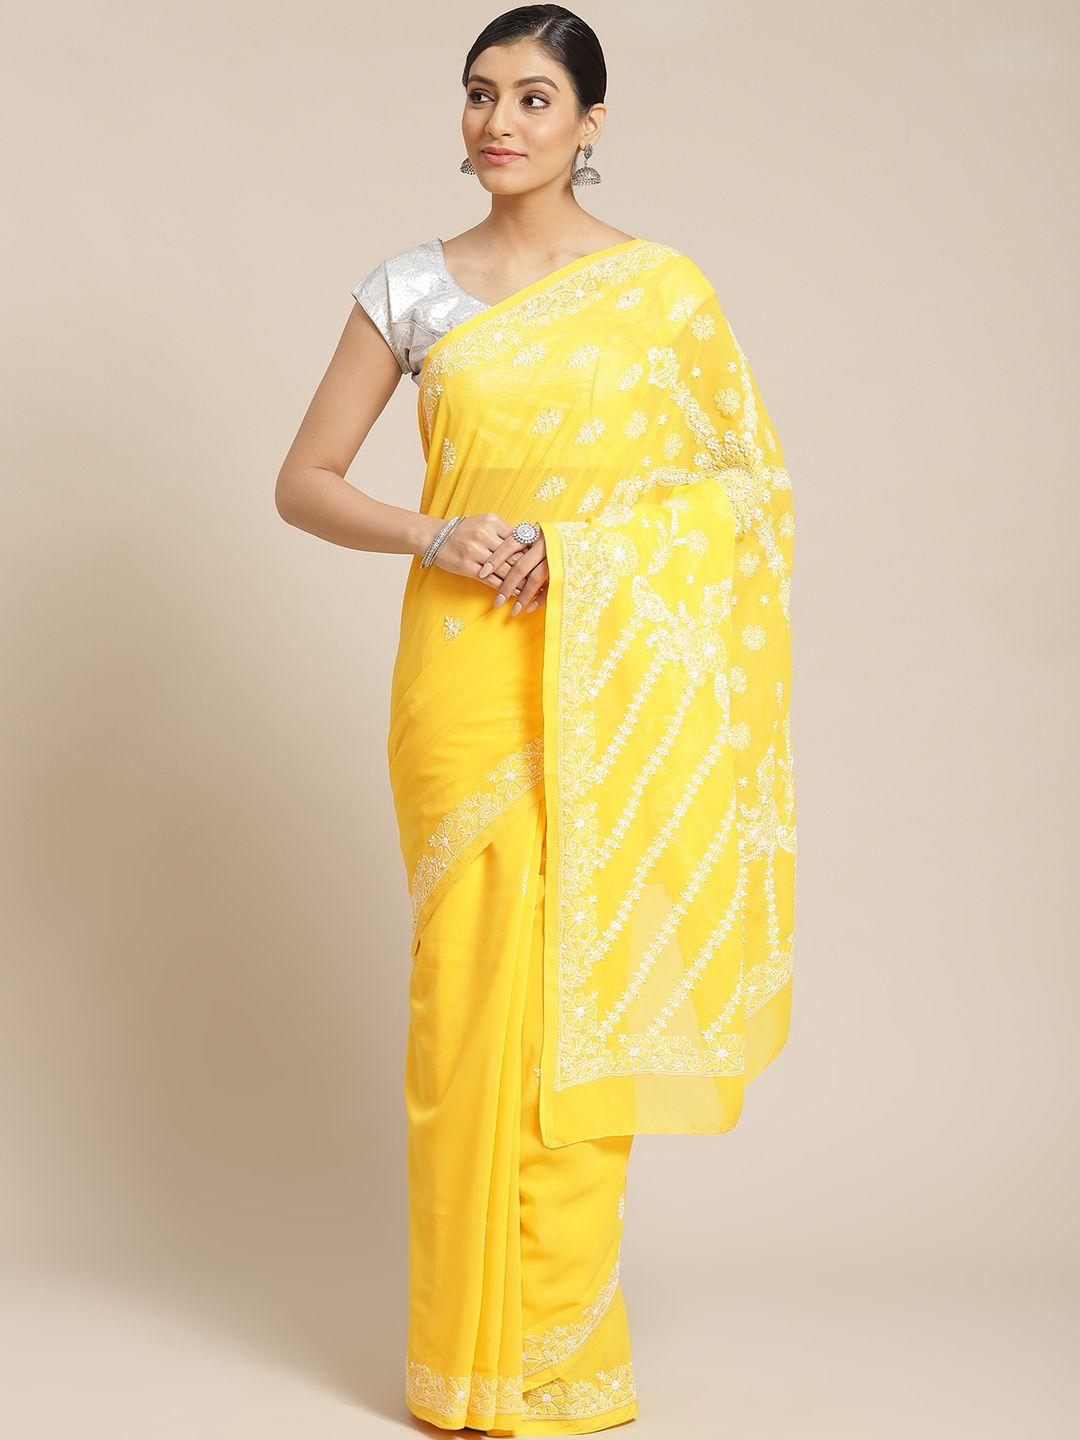 ada mustard yellow & white chikankari embroidered sustainable handloom saree